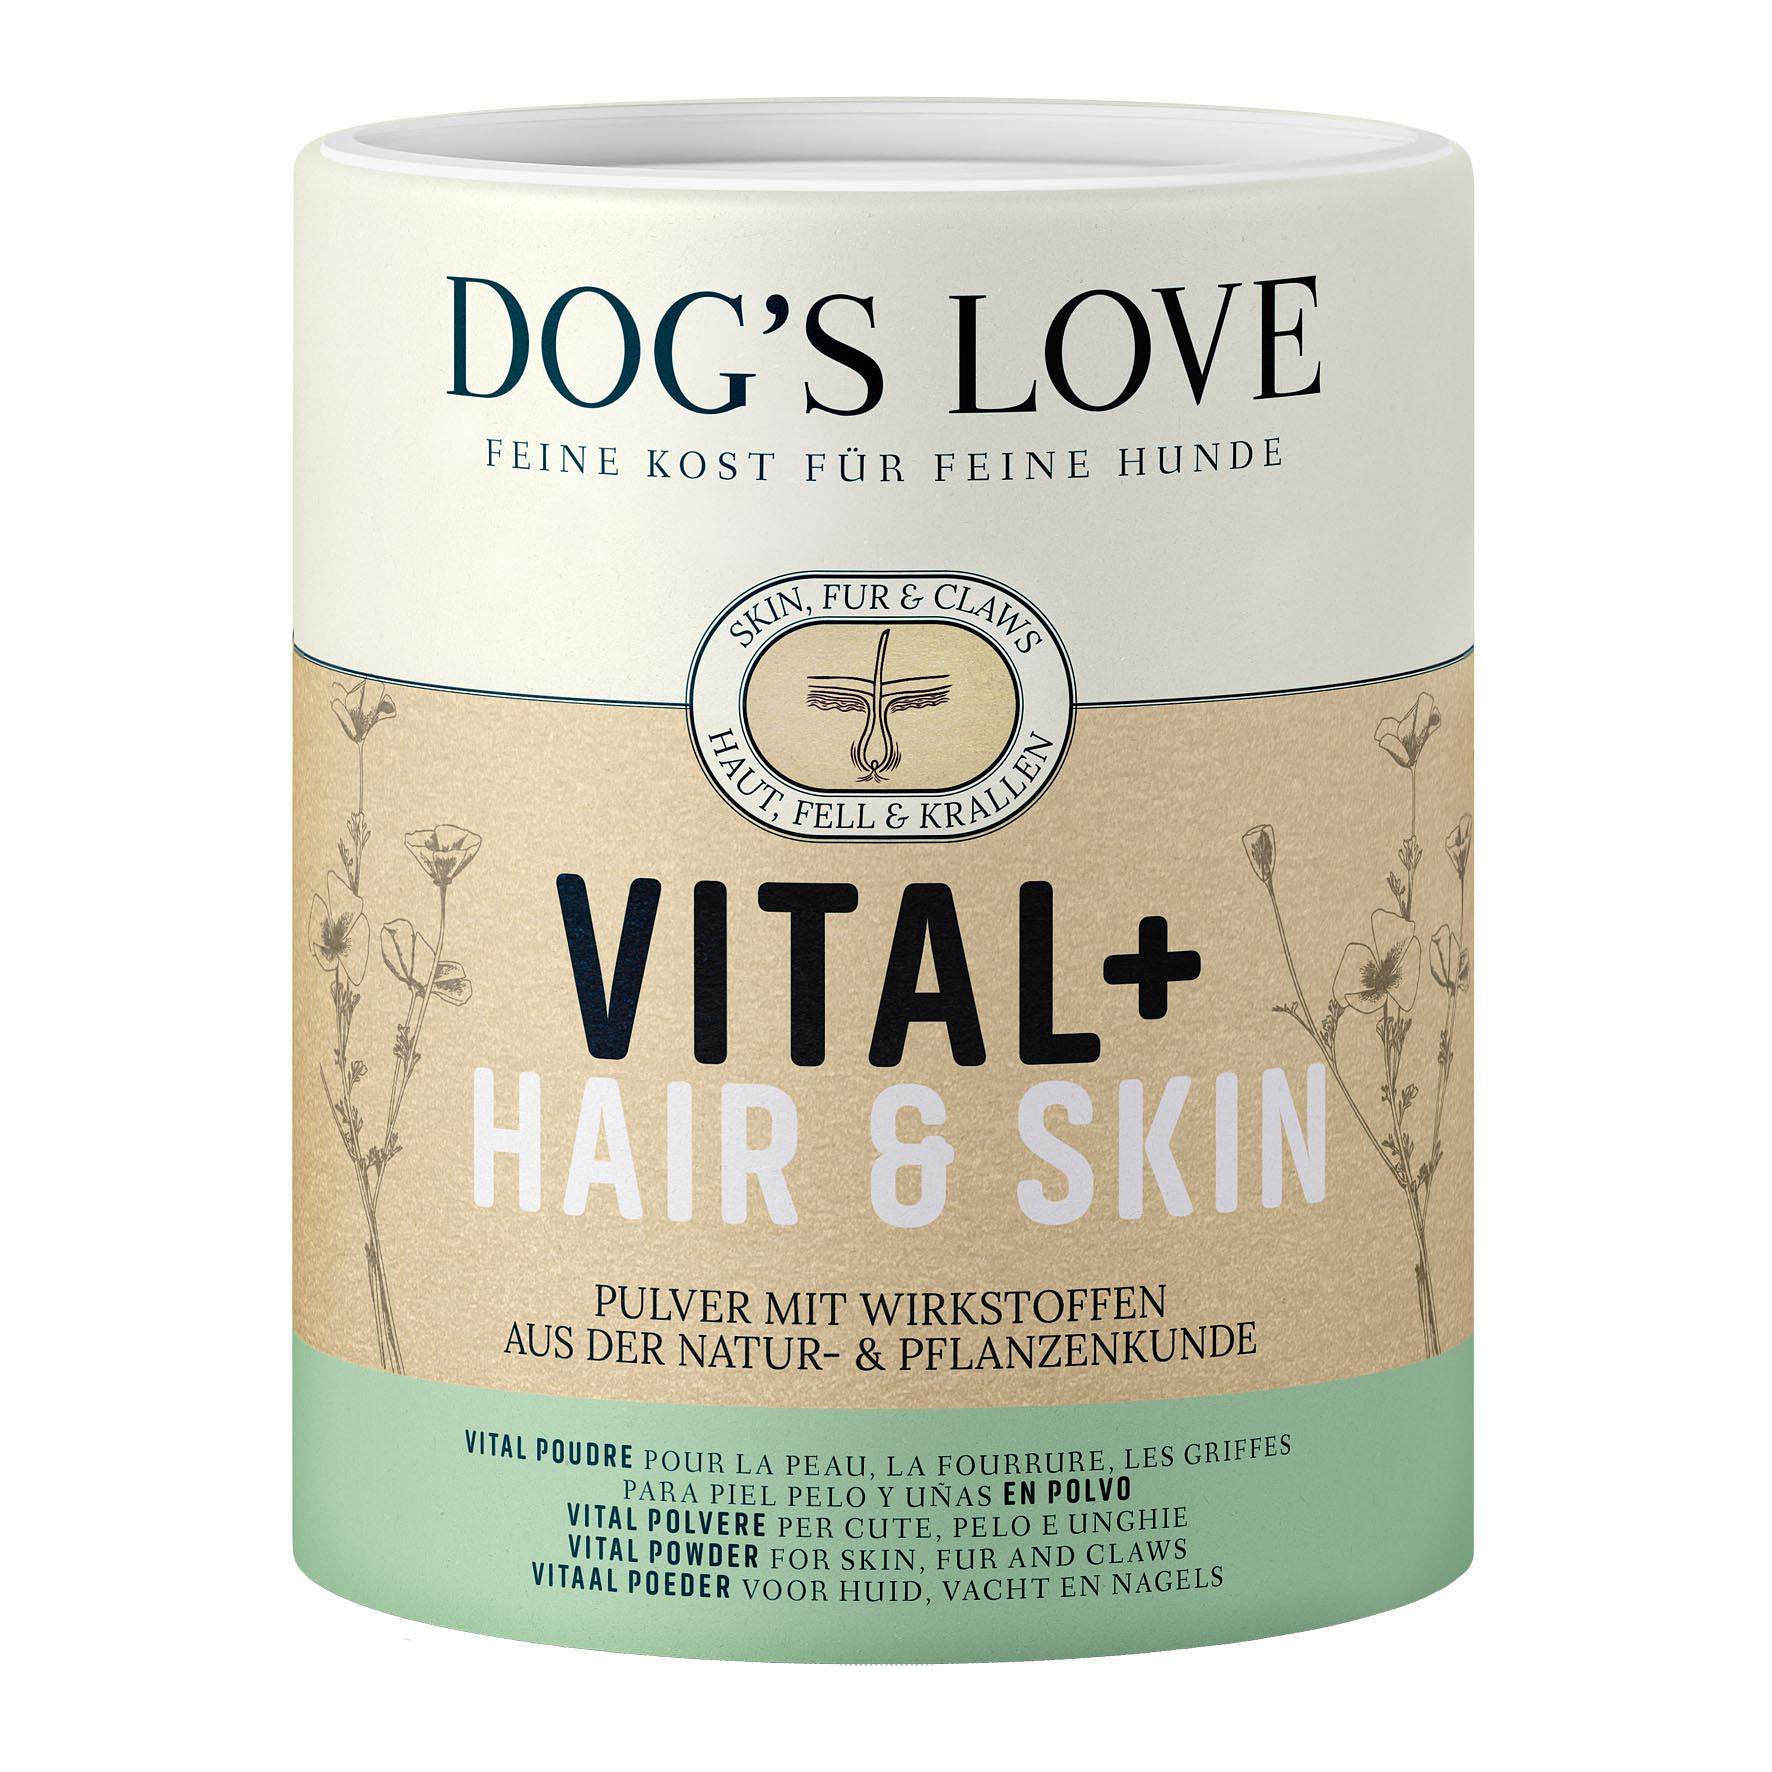 DOG'S LOVE DOC Vital Hair & Skin 350g